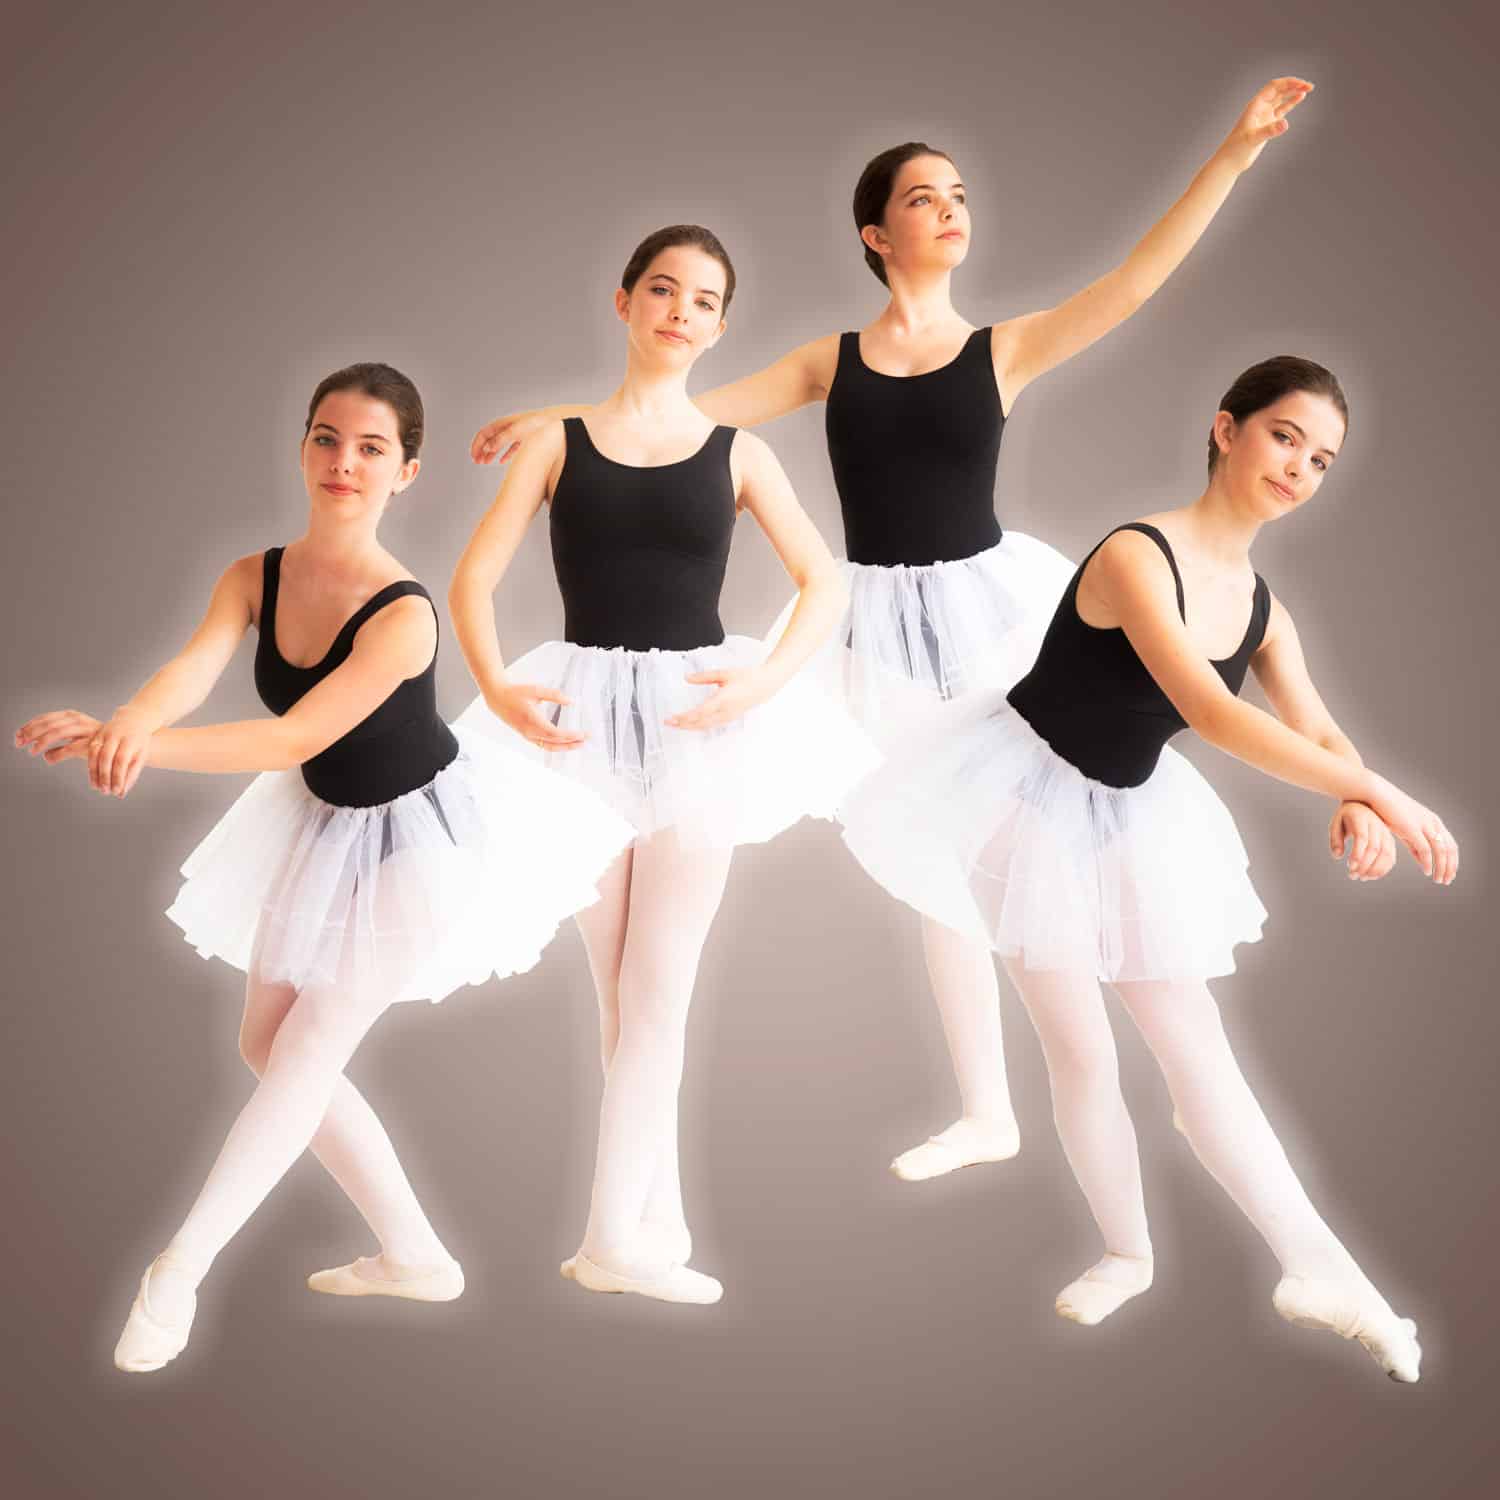 Compositie van een balletmeisje in verschillende poses.